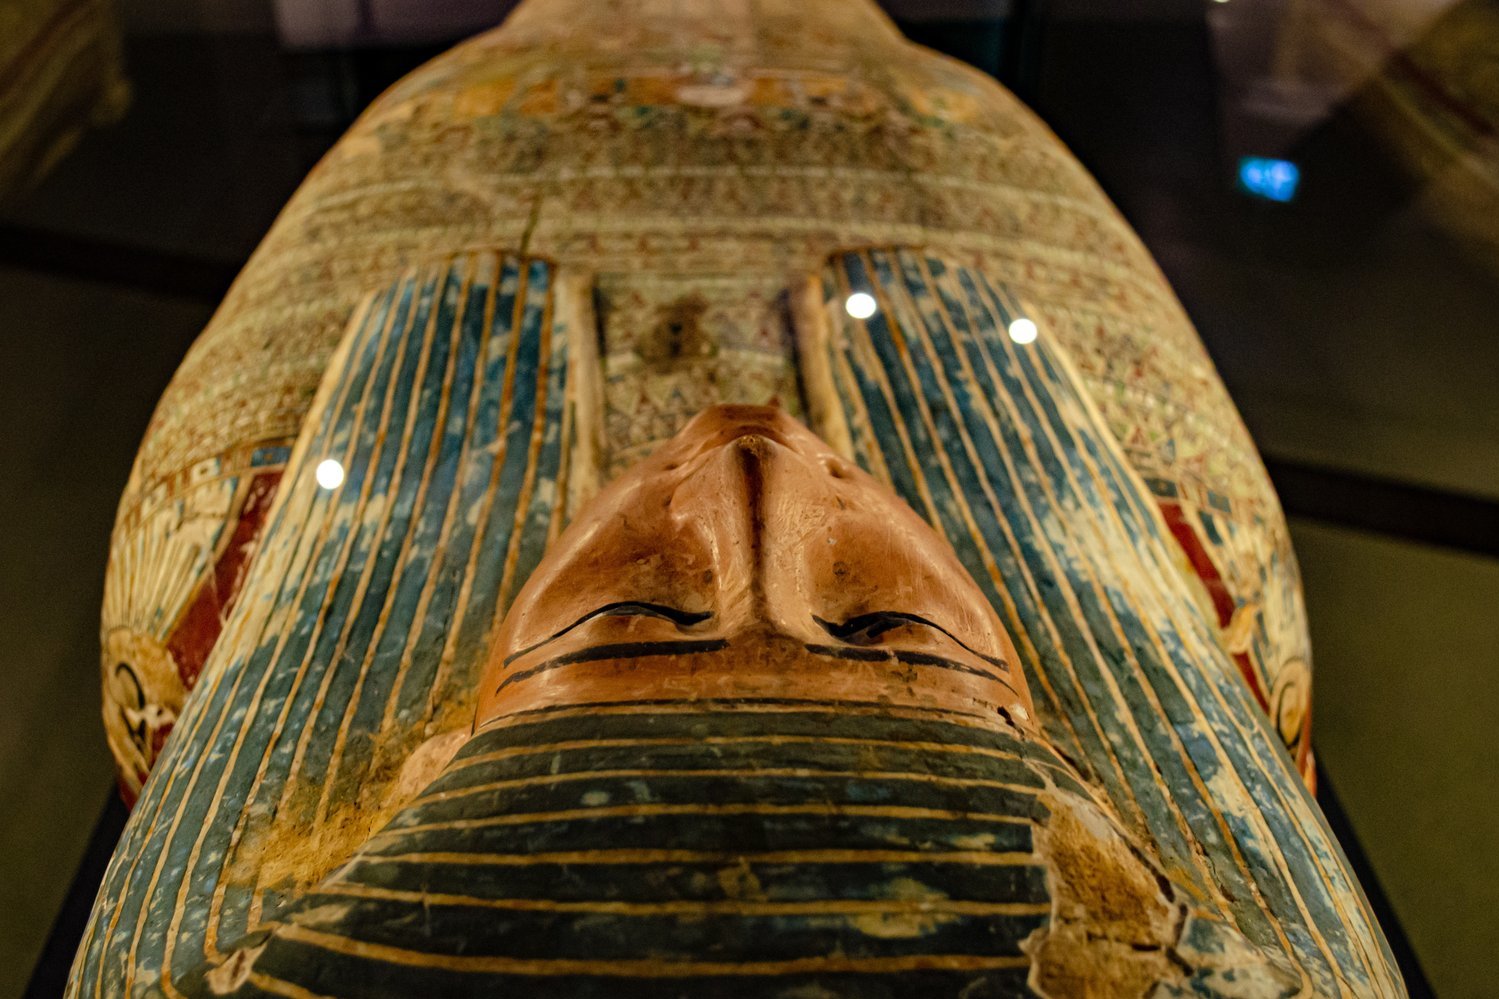 Ученые воссоздали запах бальзама для мумификации, который применяли в Древнем Египте 3,5 тысяч лет тому назад